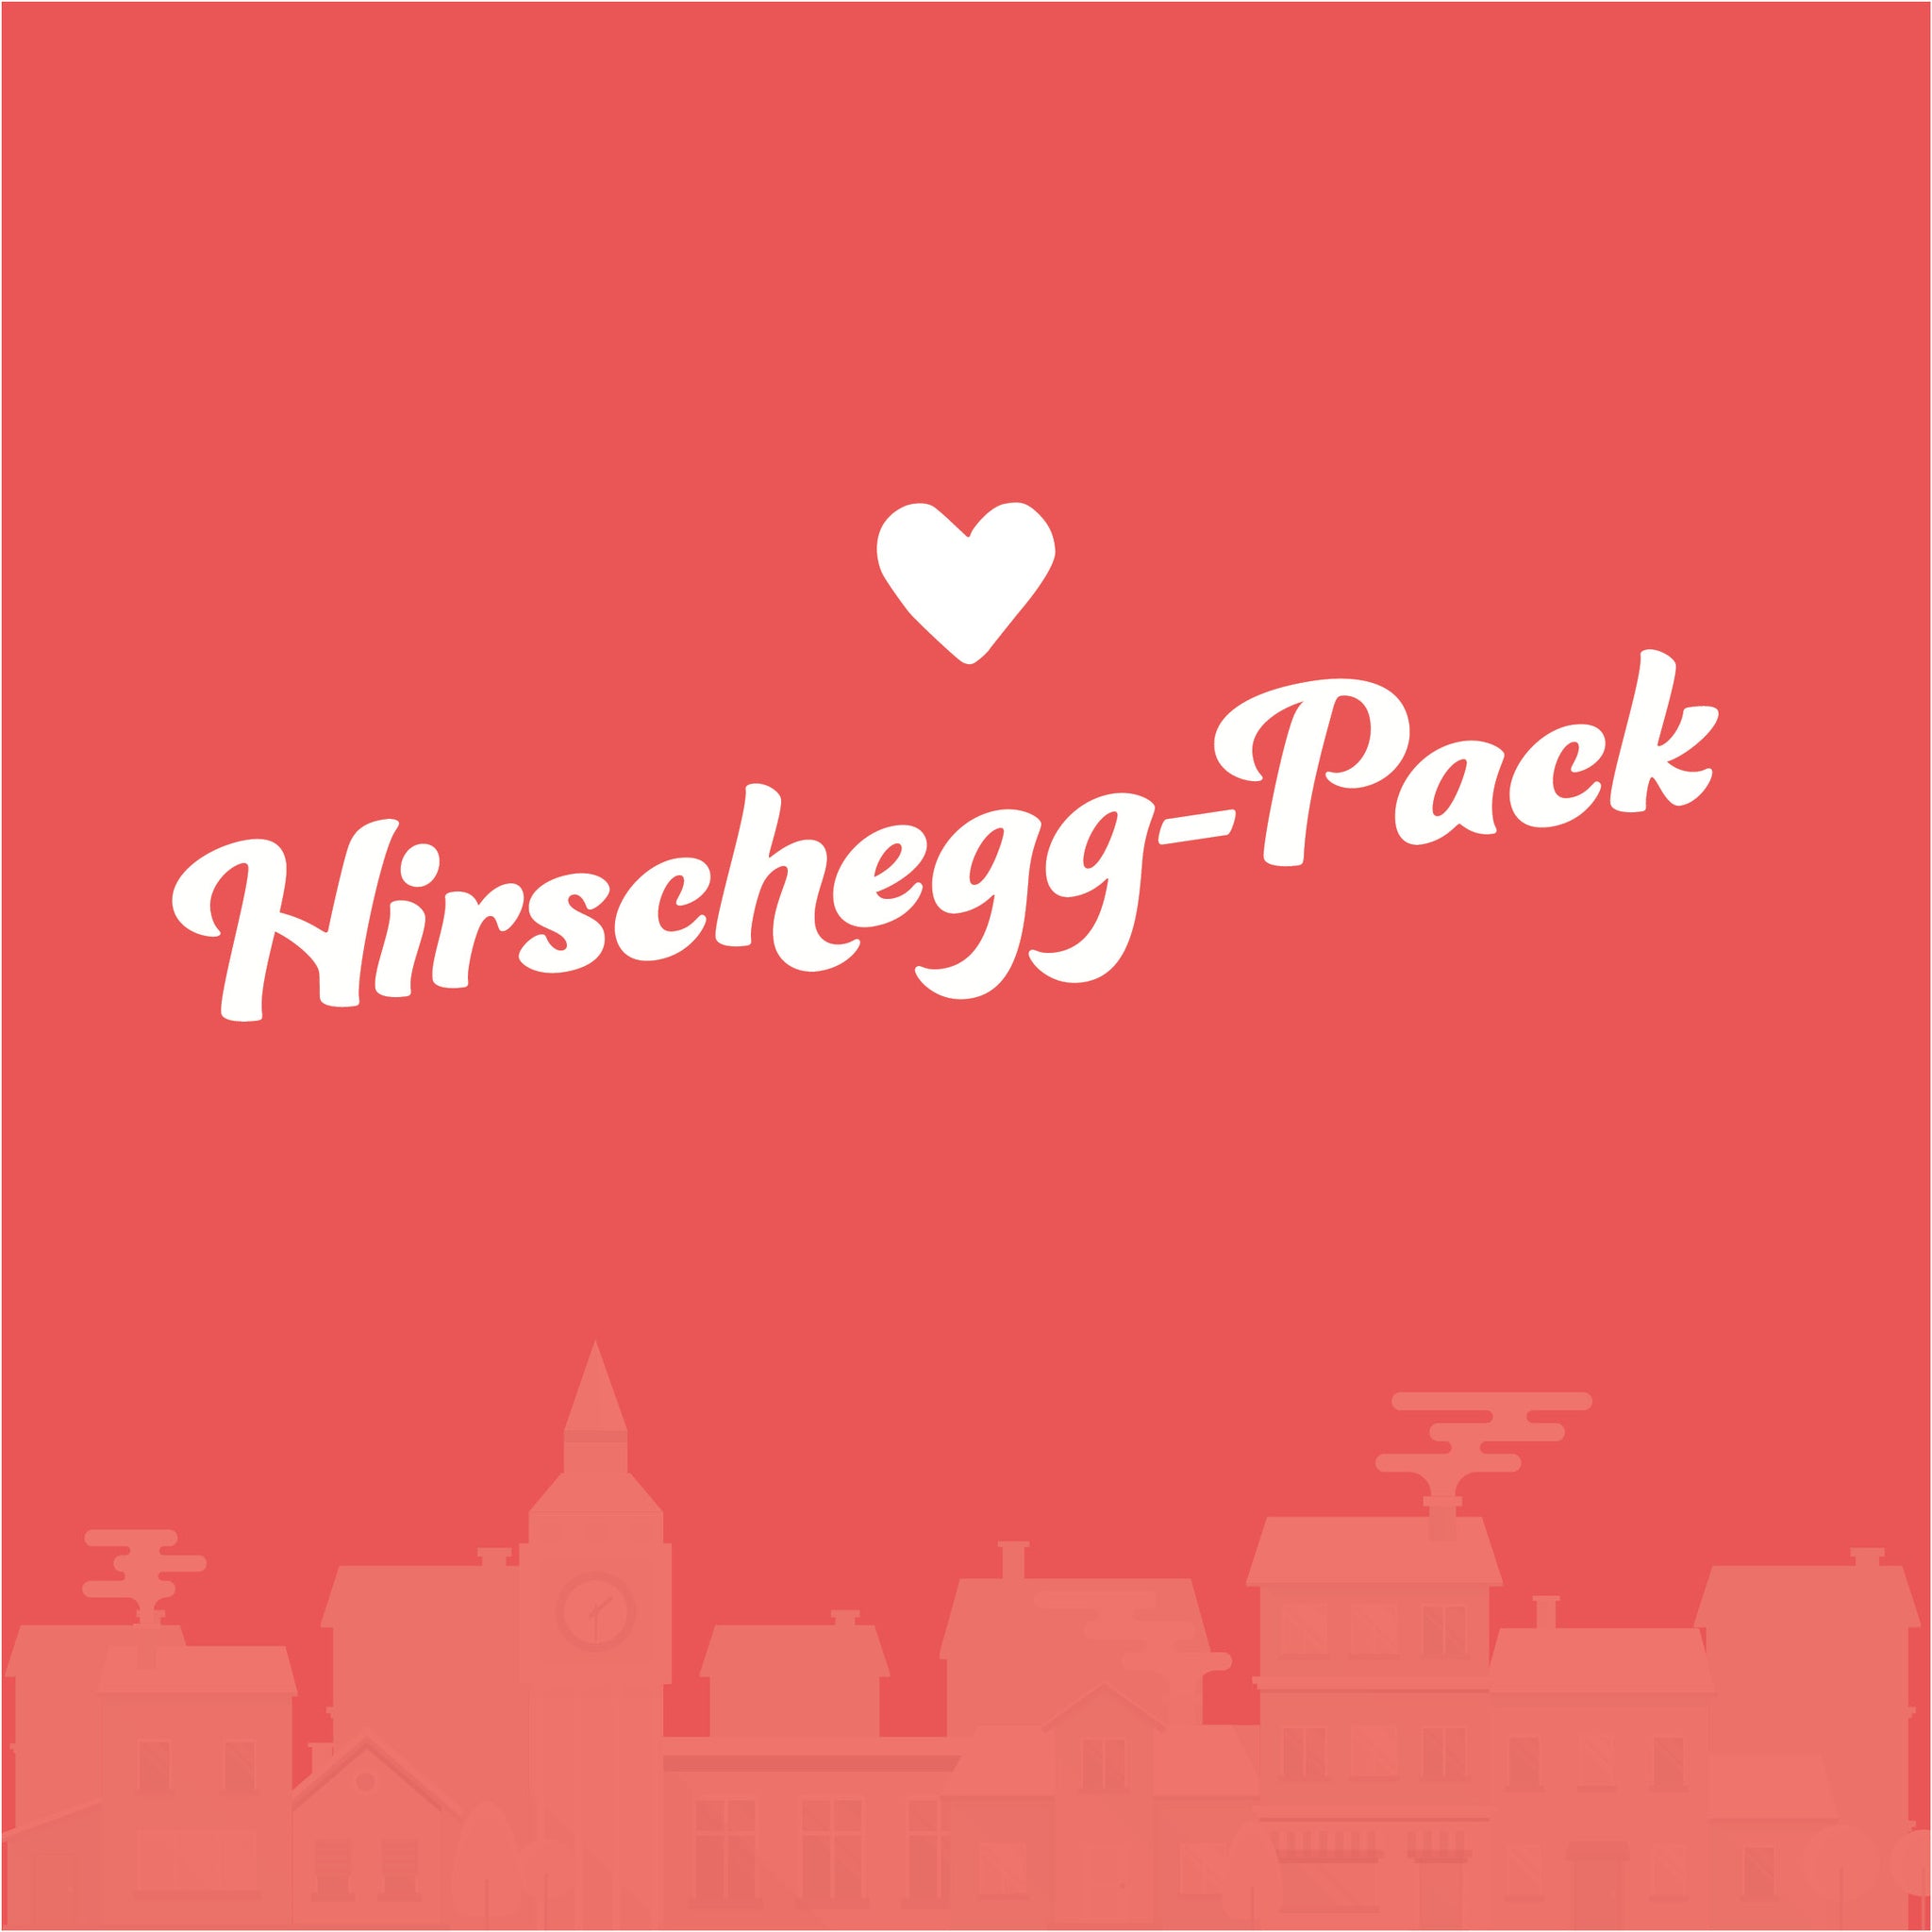 Hirschegg-Pack